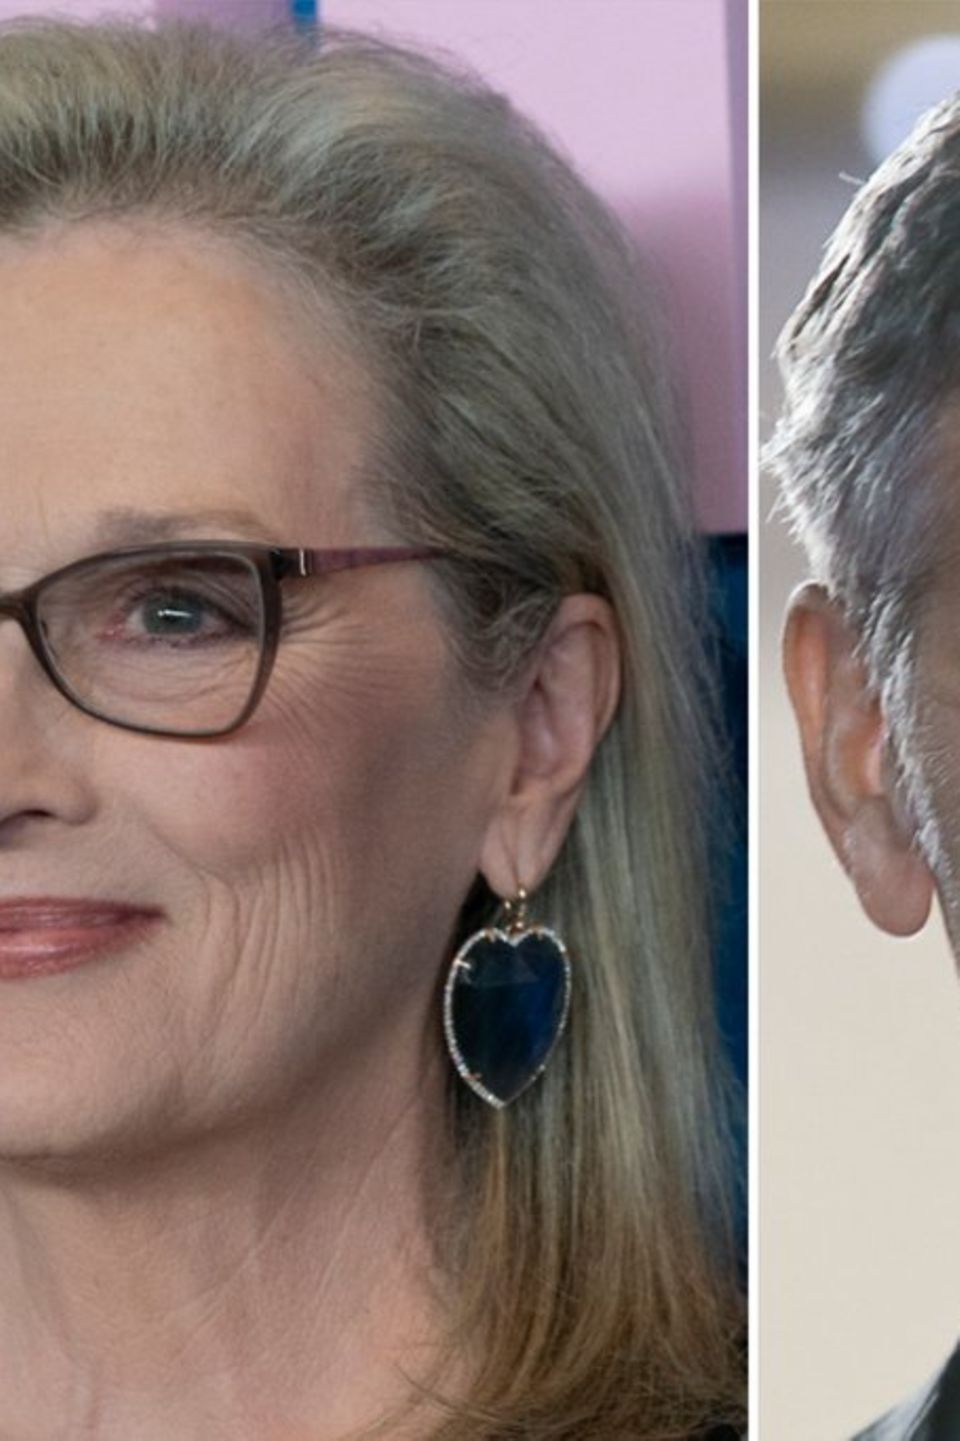 Meryl Streep und George Clooney zeigen ihre Unterstützung für die Schauspieler-Gewerkschaft.